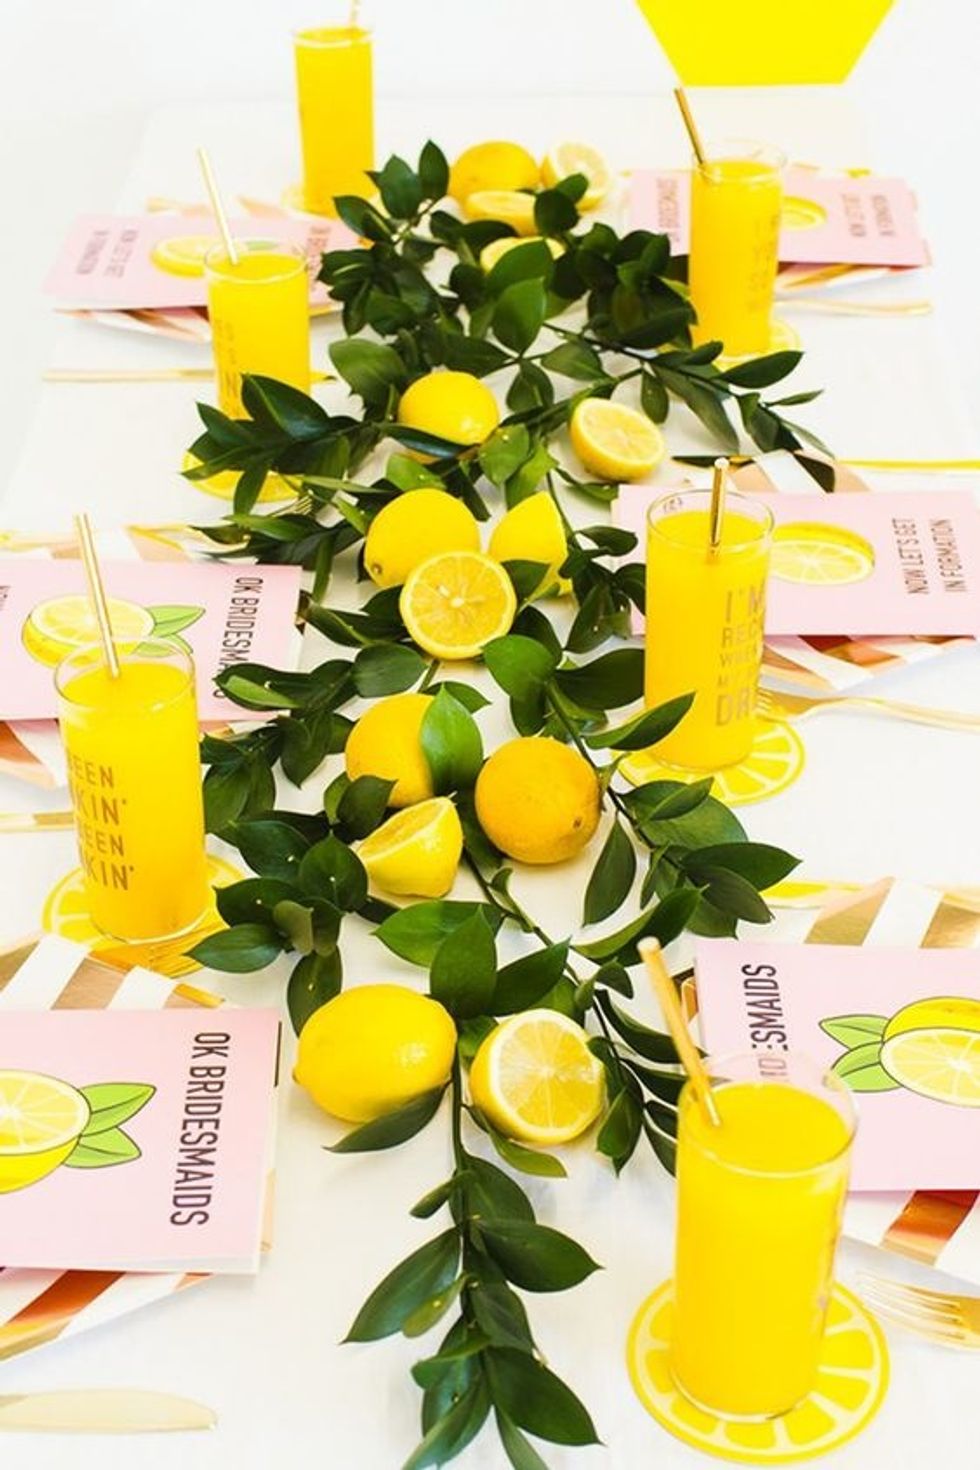 Beyonce's Lemonade lemons and greenery on the table